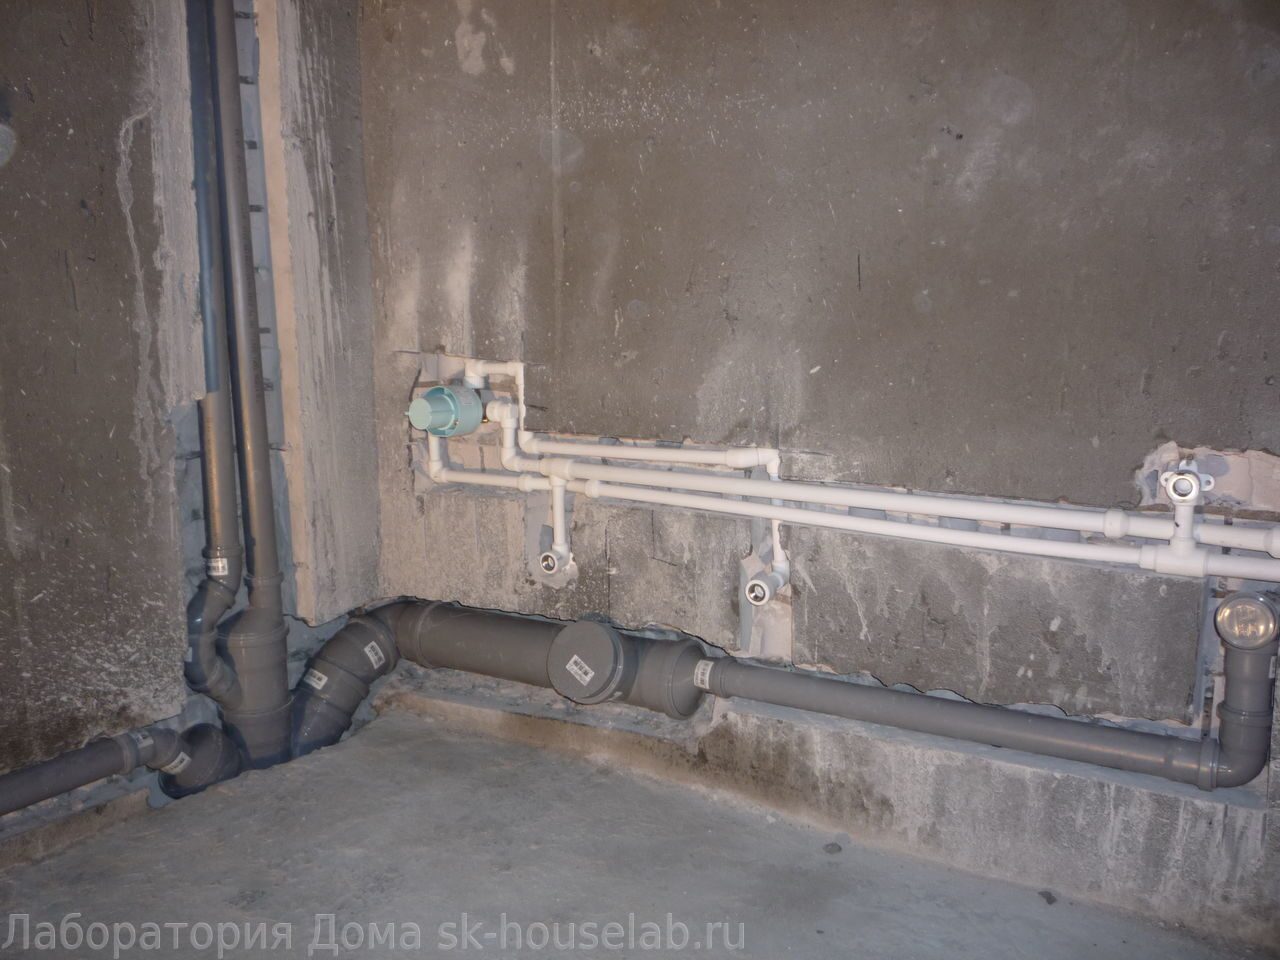 Водопроводные и канализационные трубы зарывают. Прокладка канализационных 110 труб в стене в ванной. Канализационная труба в стене. Прокладка труб водоснабжения в стене. Укладка труб в стену.